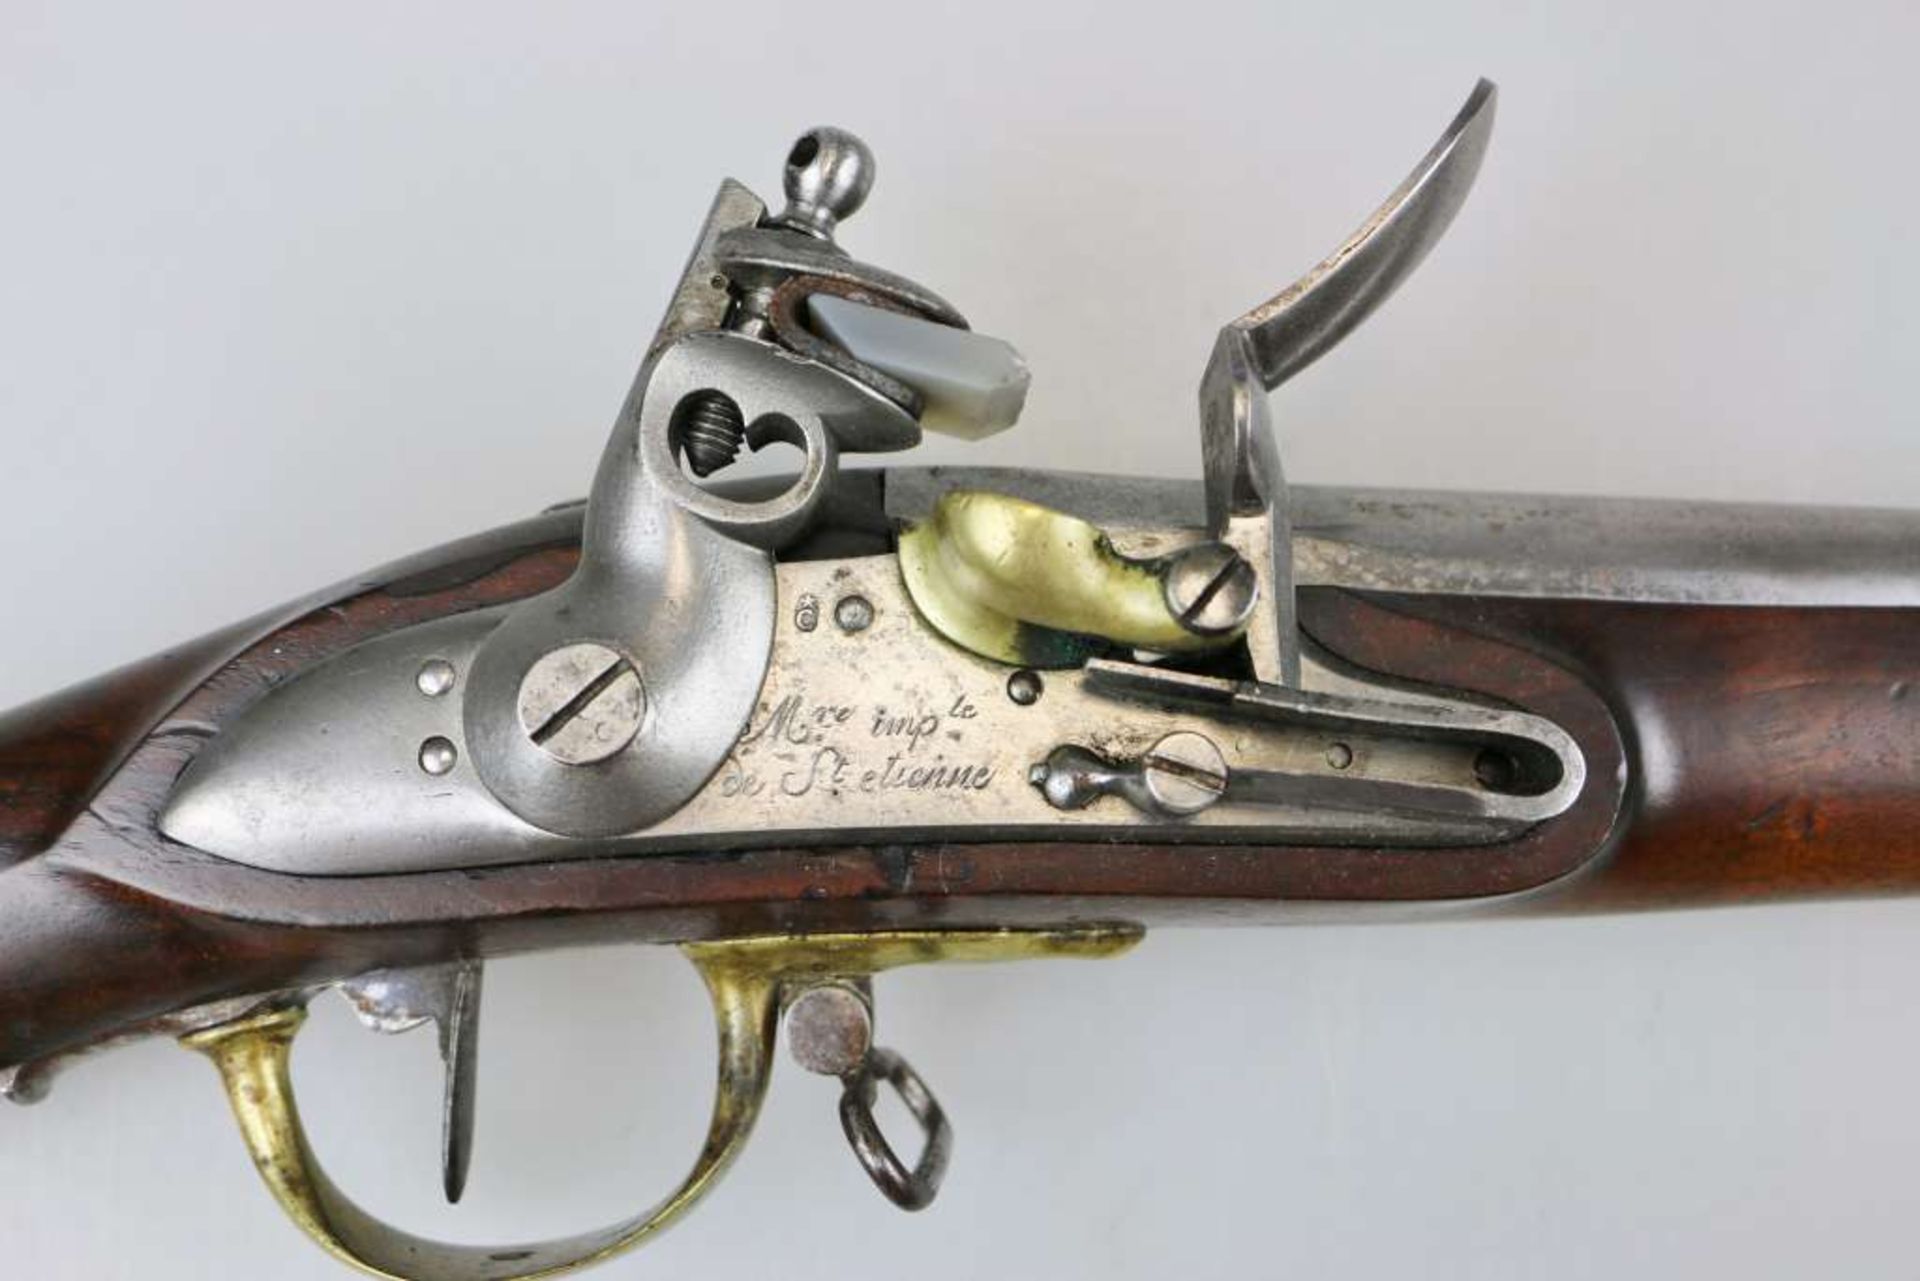 Frankreich Dragonergewehr M an 9, Manufaktur St. Etienne. Baujahr 1812. Runder glatter Lauf im - Bild 3 aus 7